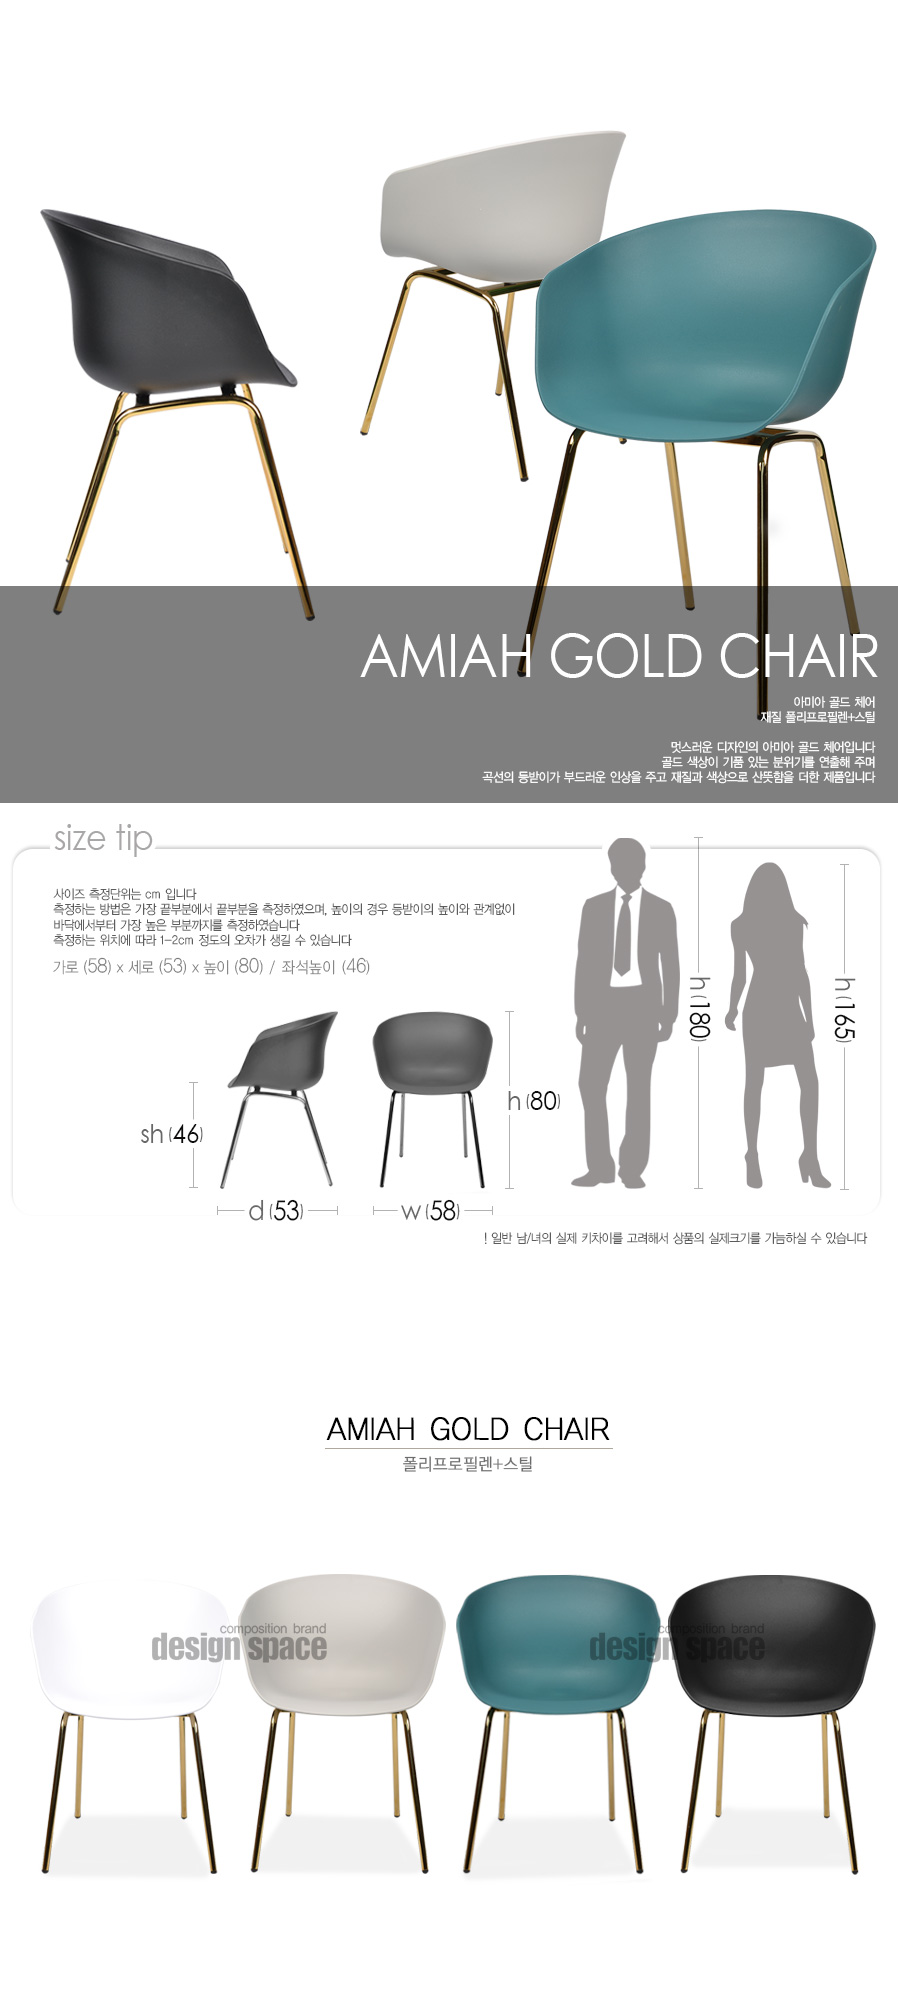 amiah-gold-chair_01.jpg